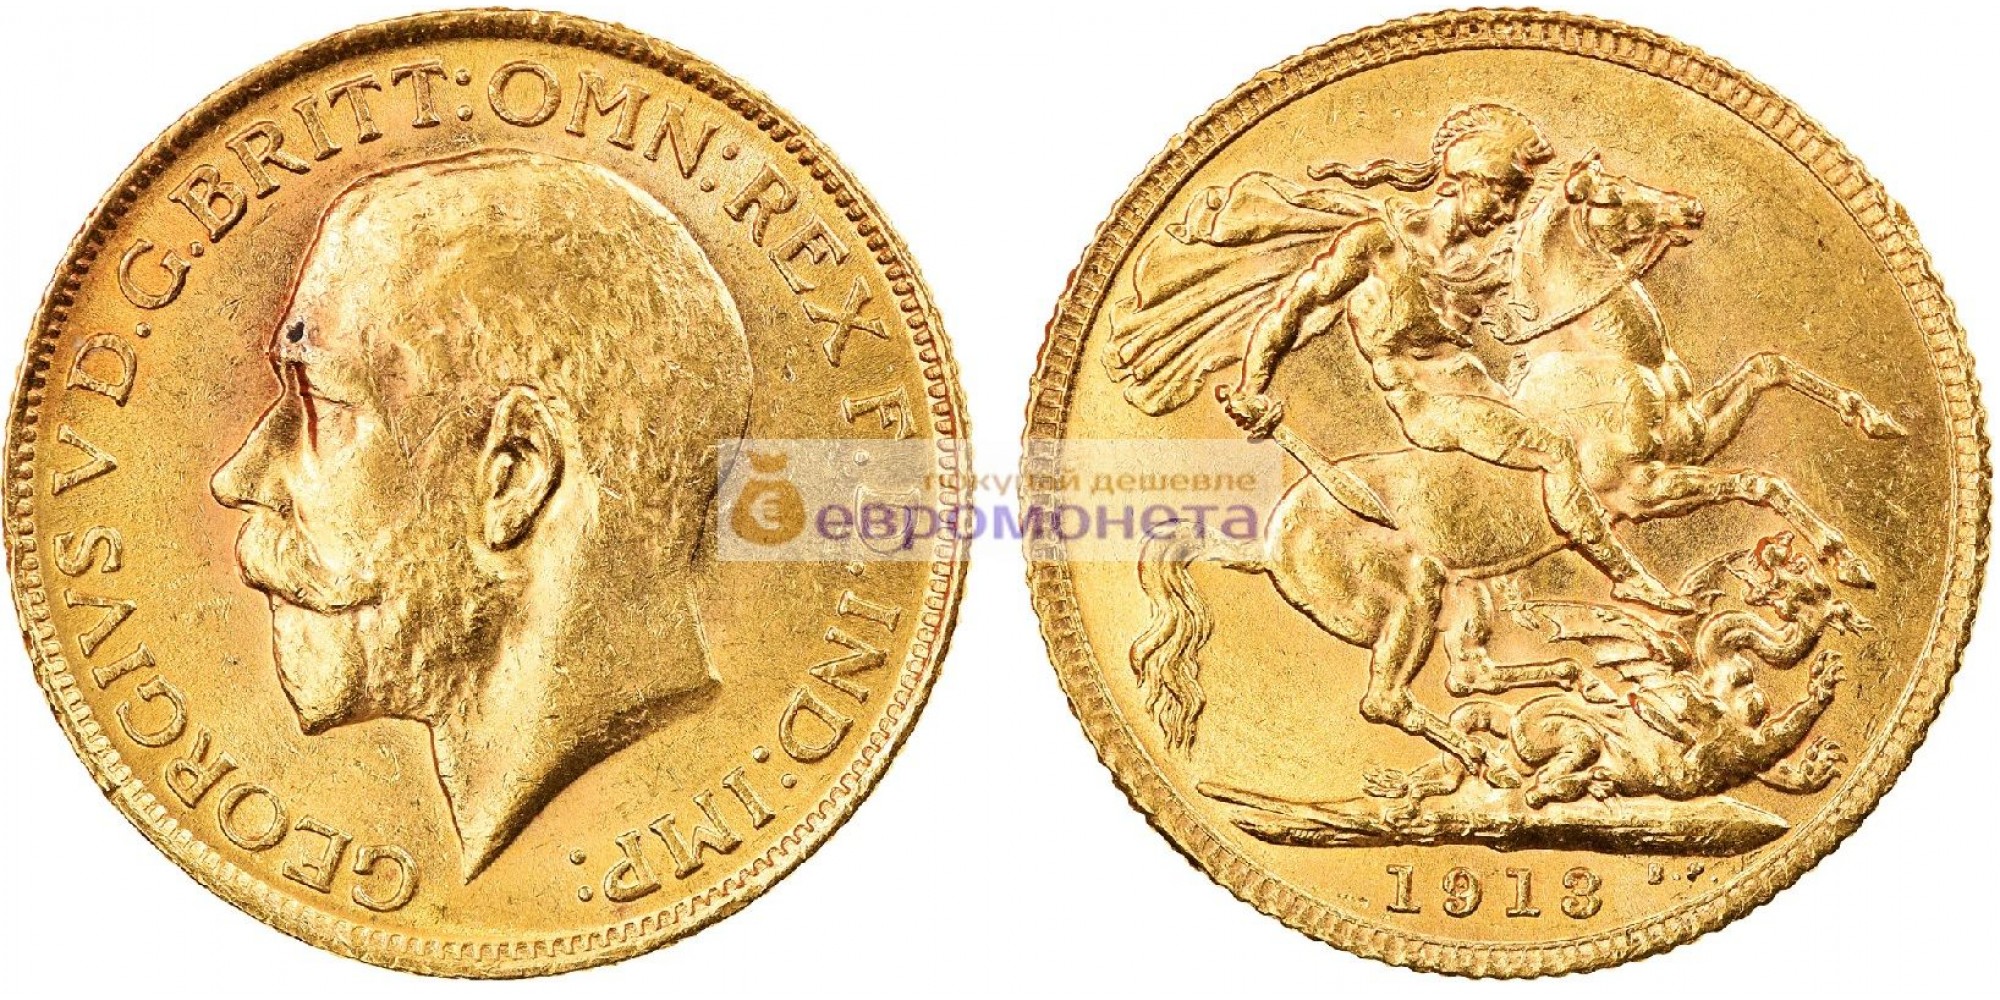 Великобритания 1 фунт (соверен) 1913 год. Король Георг V. Золото. АЦ